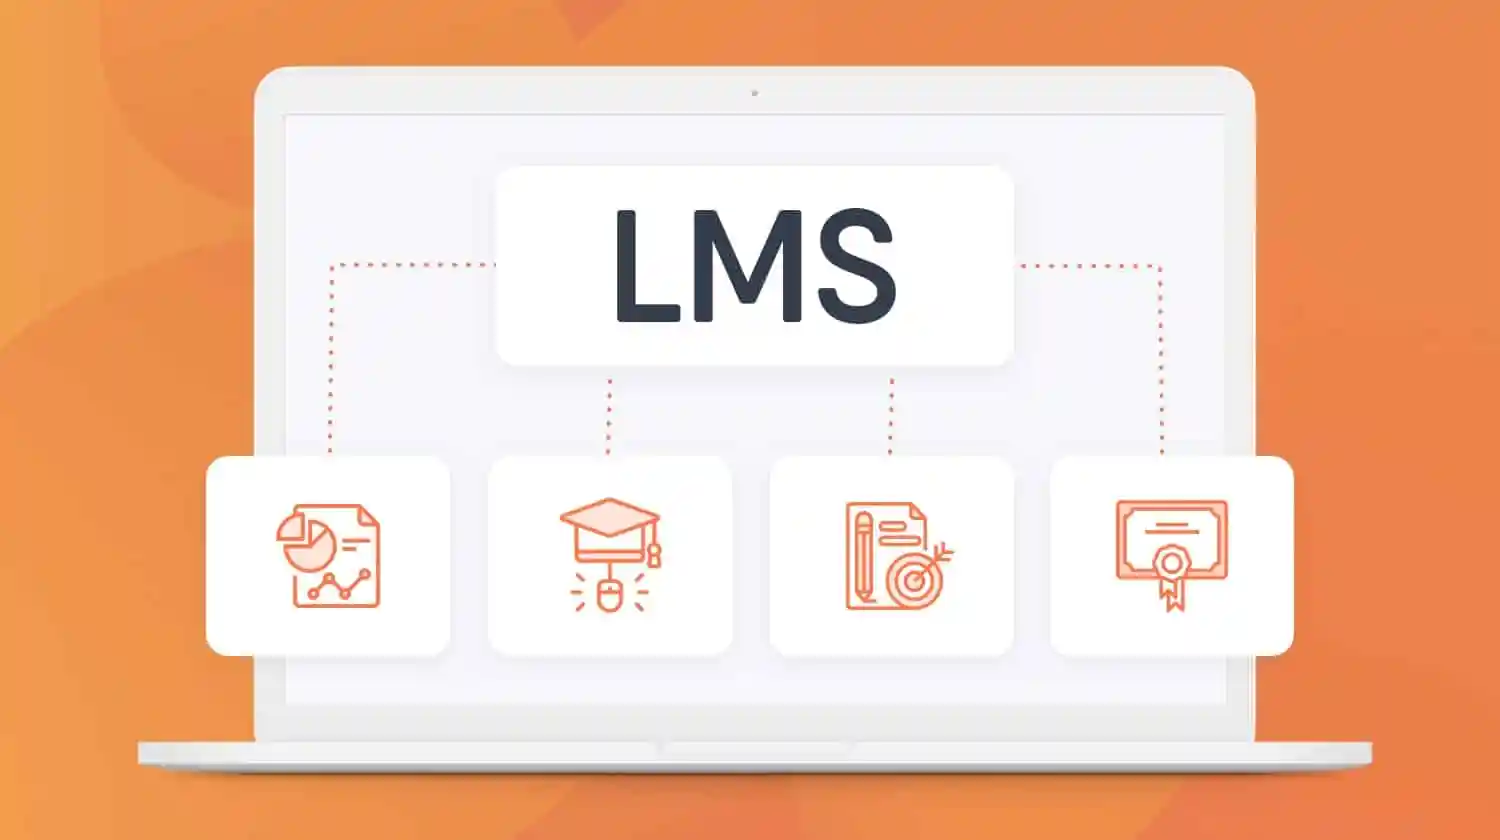 LMS в корпоративном обучении: максимизация потенциала сотрудников через цифровизацию образовательного процесса